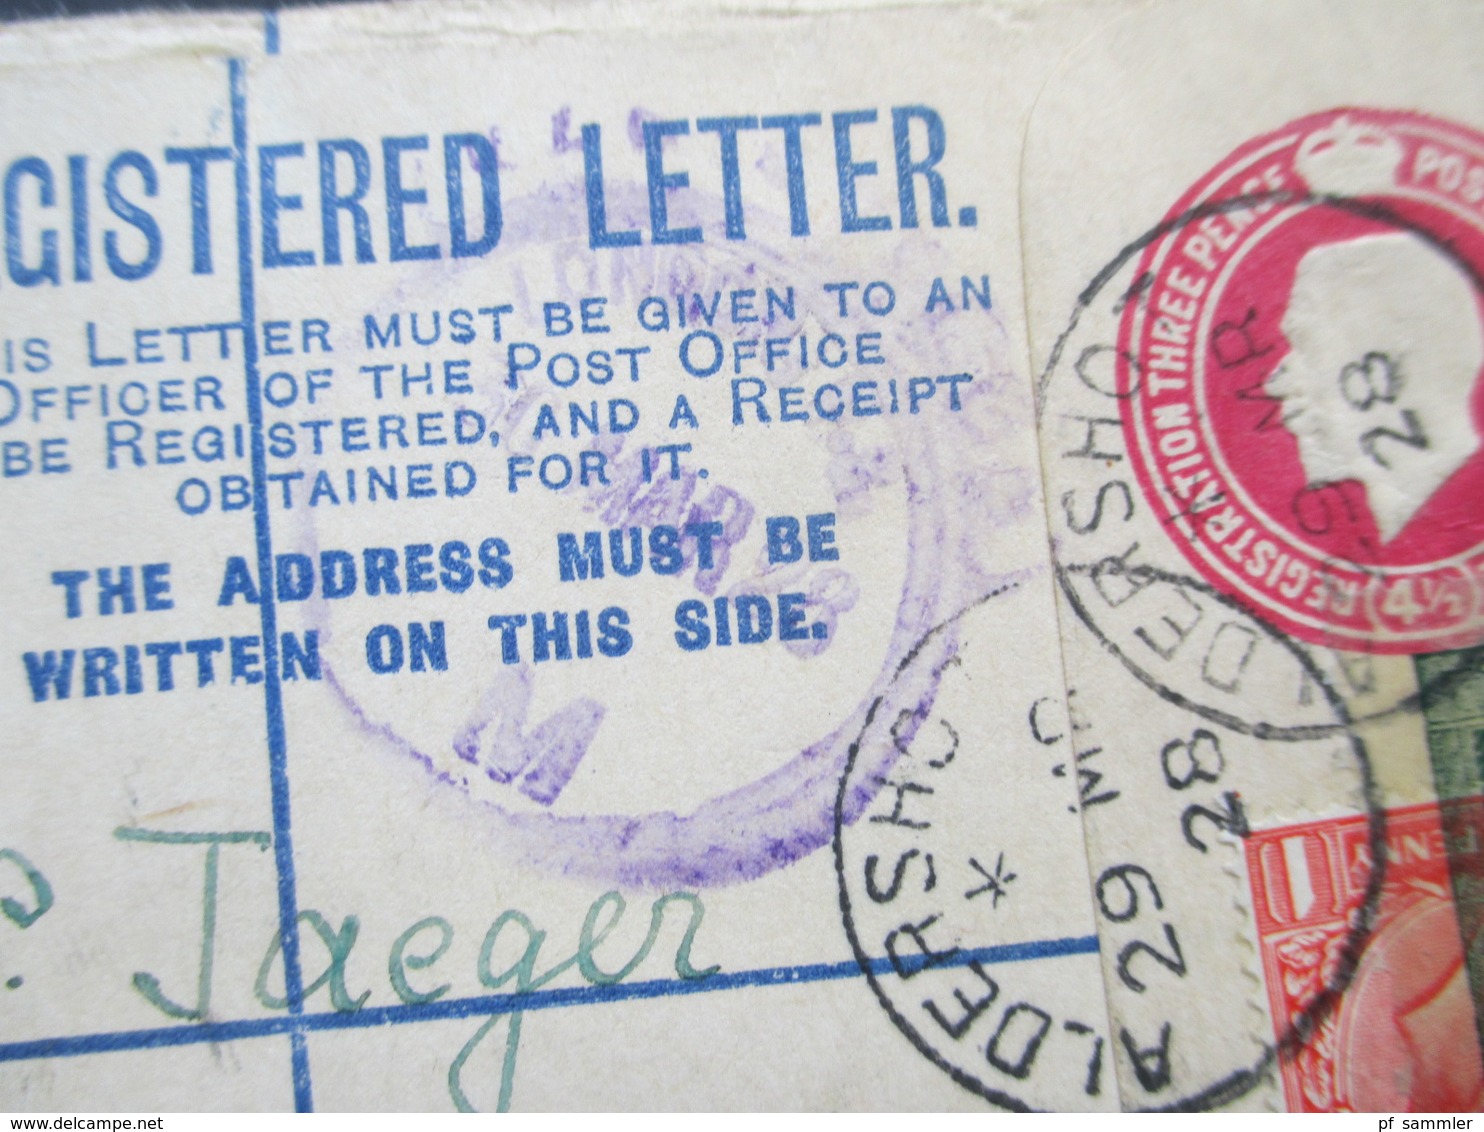 GB 1928 Registered Letter Aldershot No. 932 Nach Wien. Zusatzfrankatur Mit Vignette überklebt Kinderhilswerk Grado - Covers & Documents